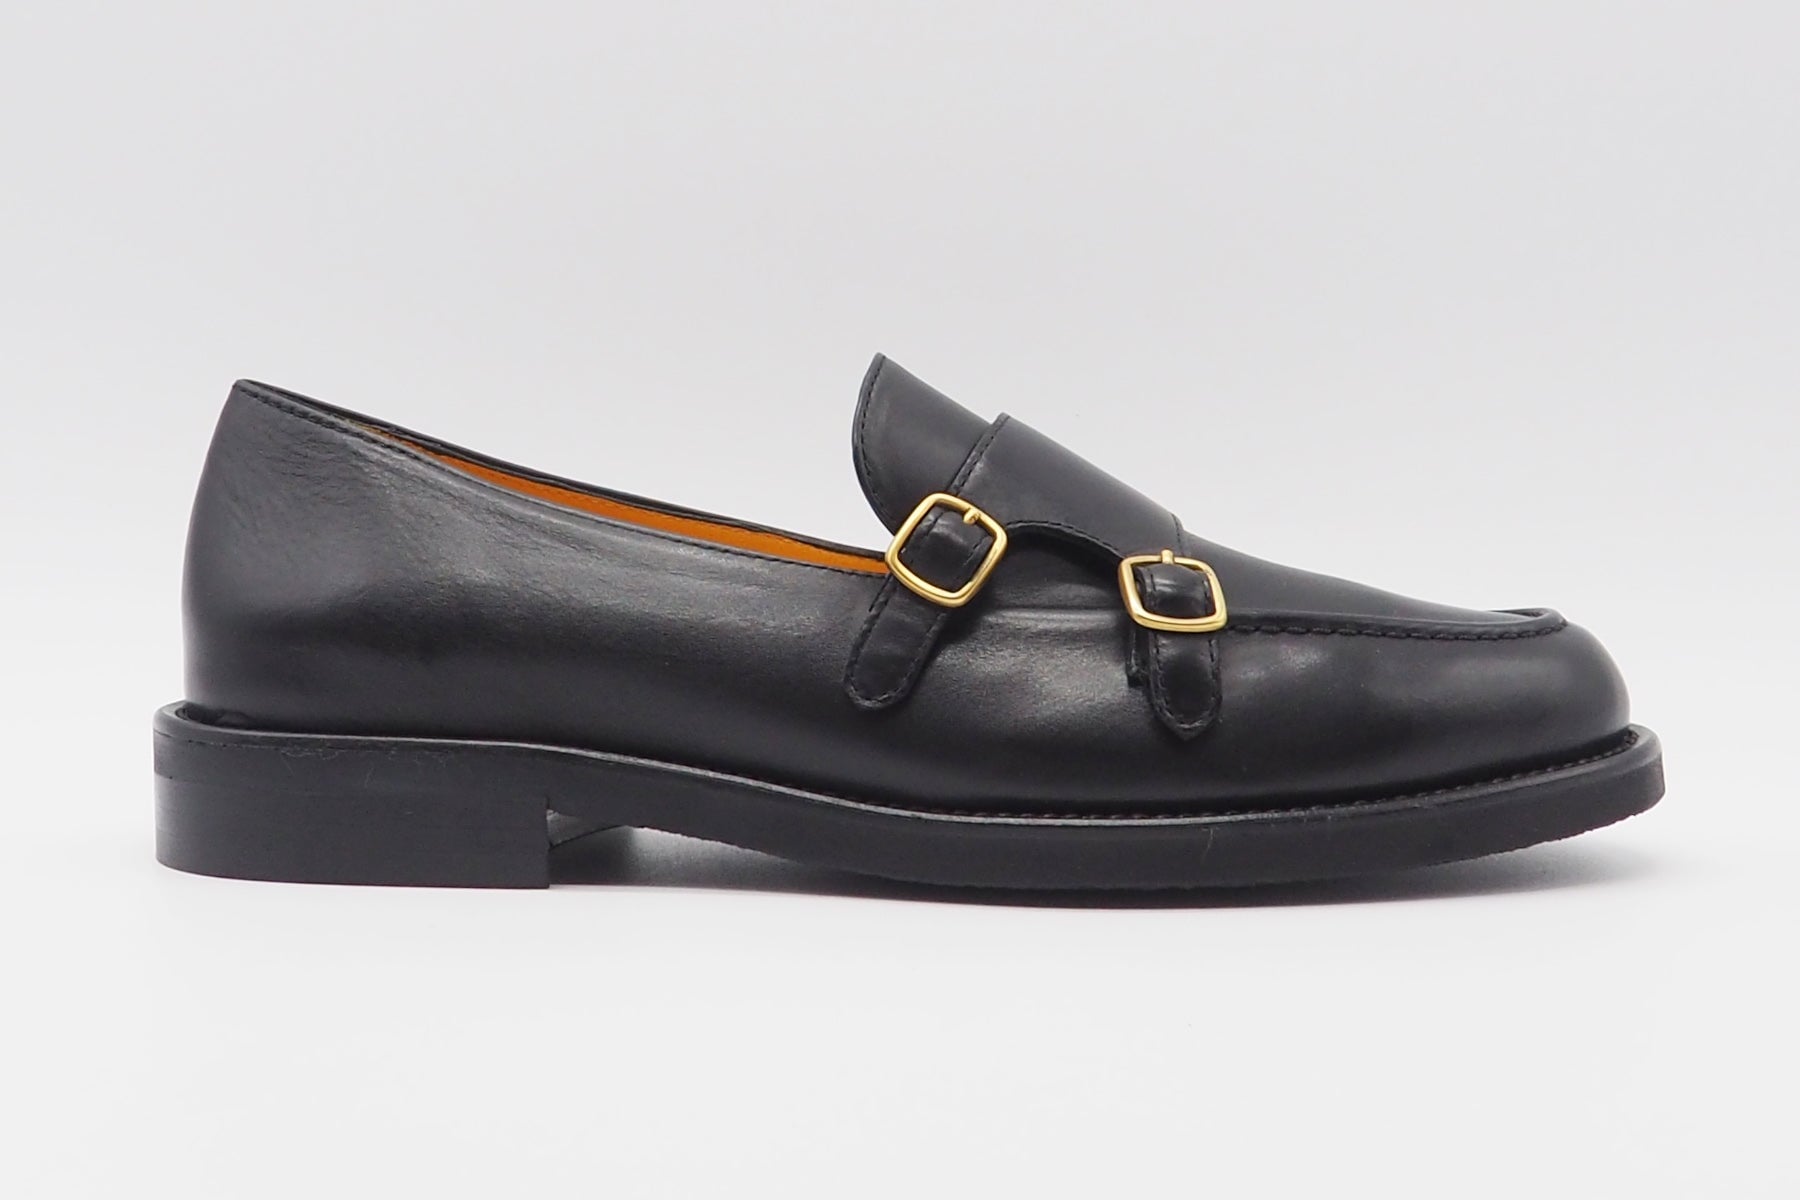 Damen Loafer aus Glattleder in Schwarz - Frida - Absatz 2cm Damen Loafers & Schnürer Mara Bini 